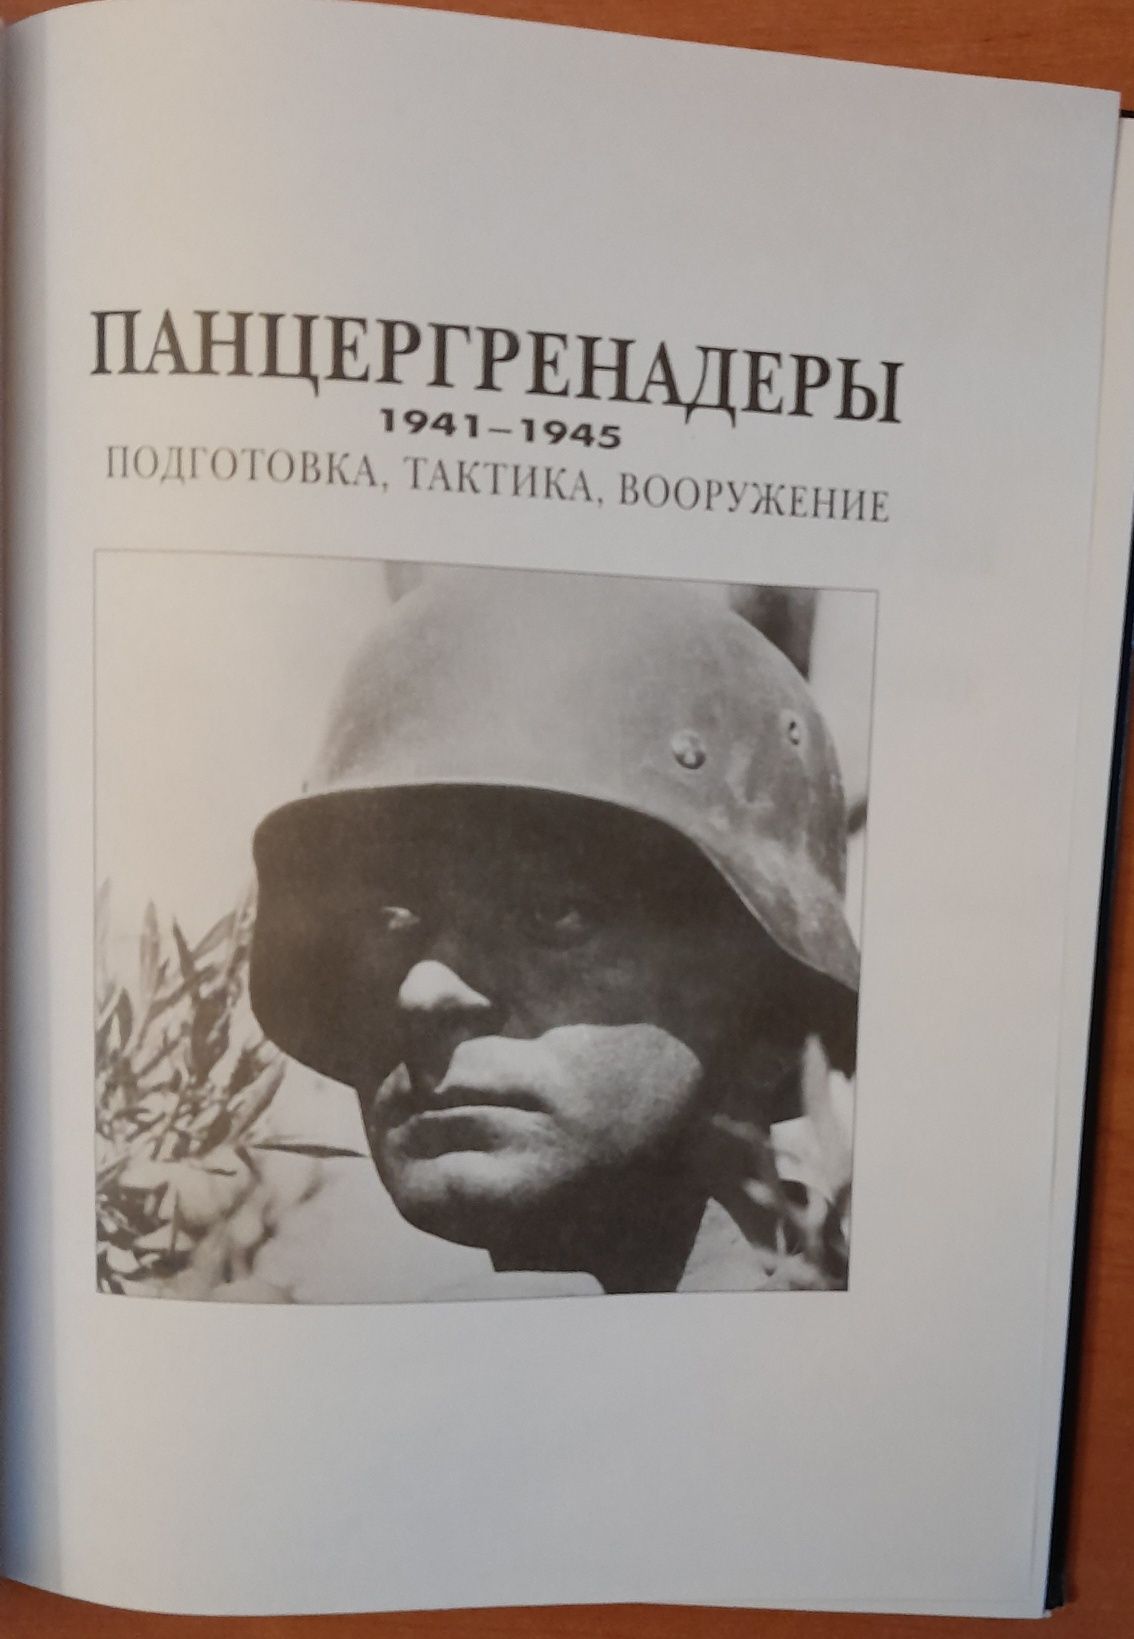 Книга.Панцергренадеры.Подготовка/Тактика/Вооружение 1941-1945.